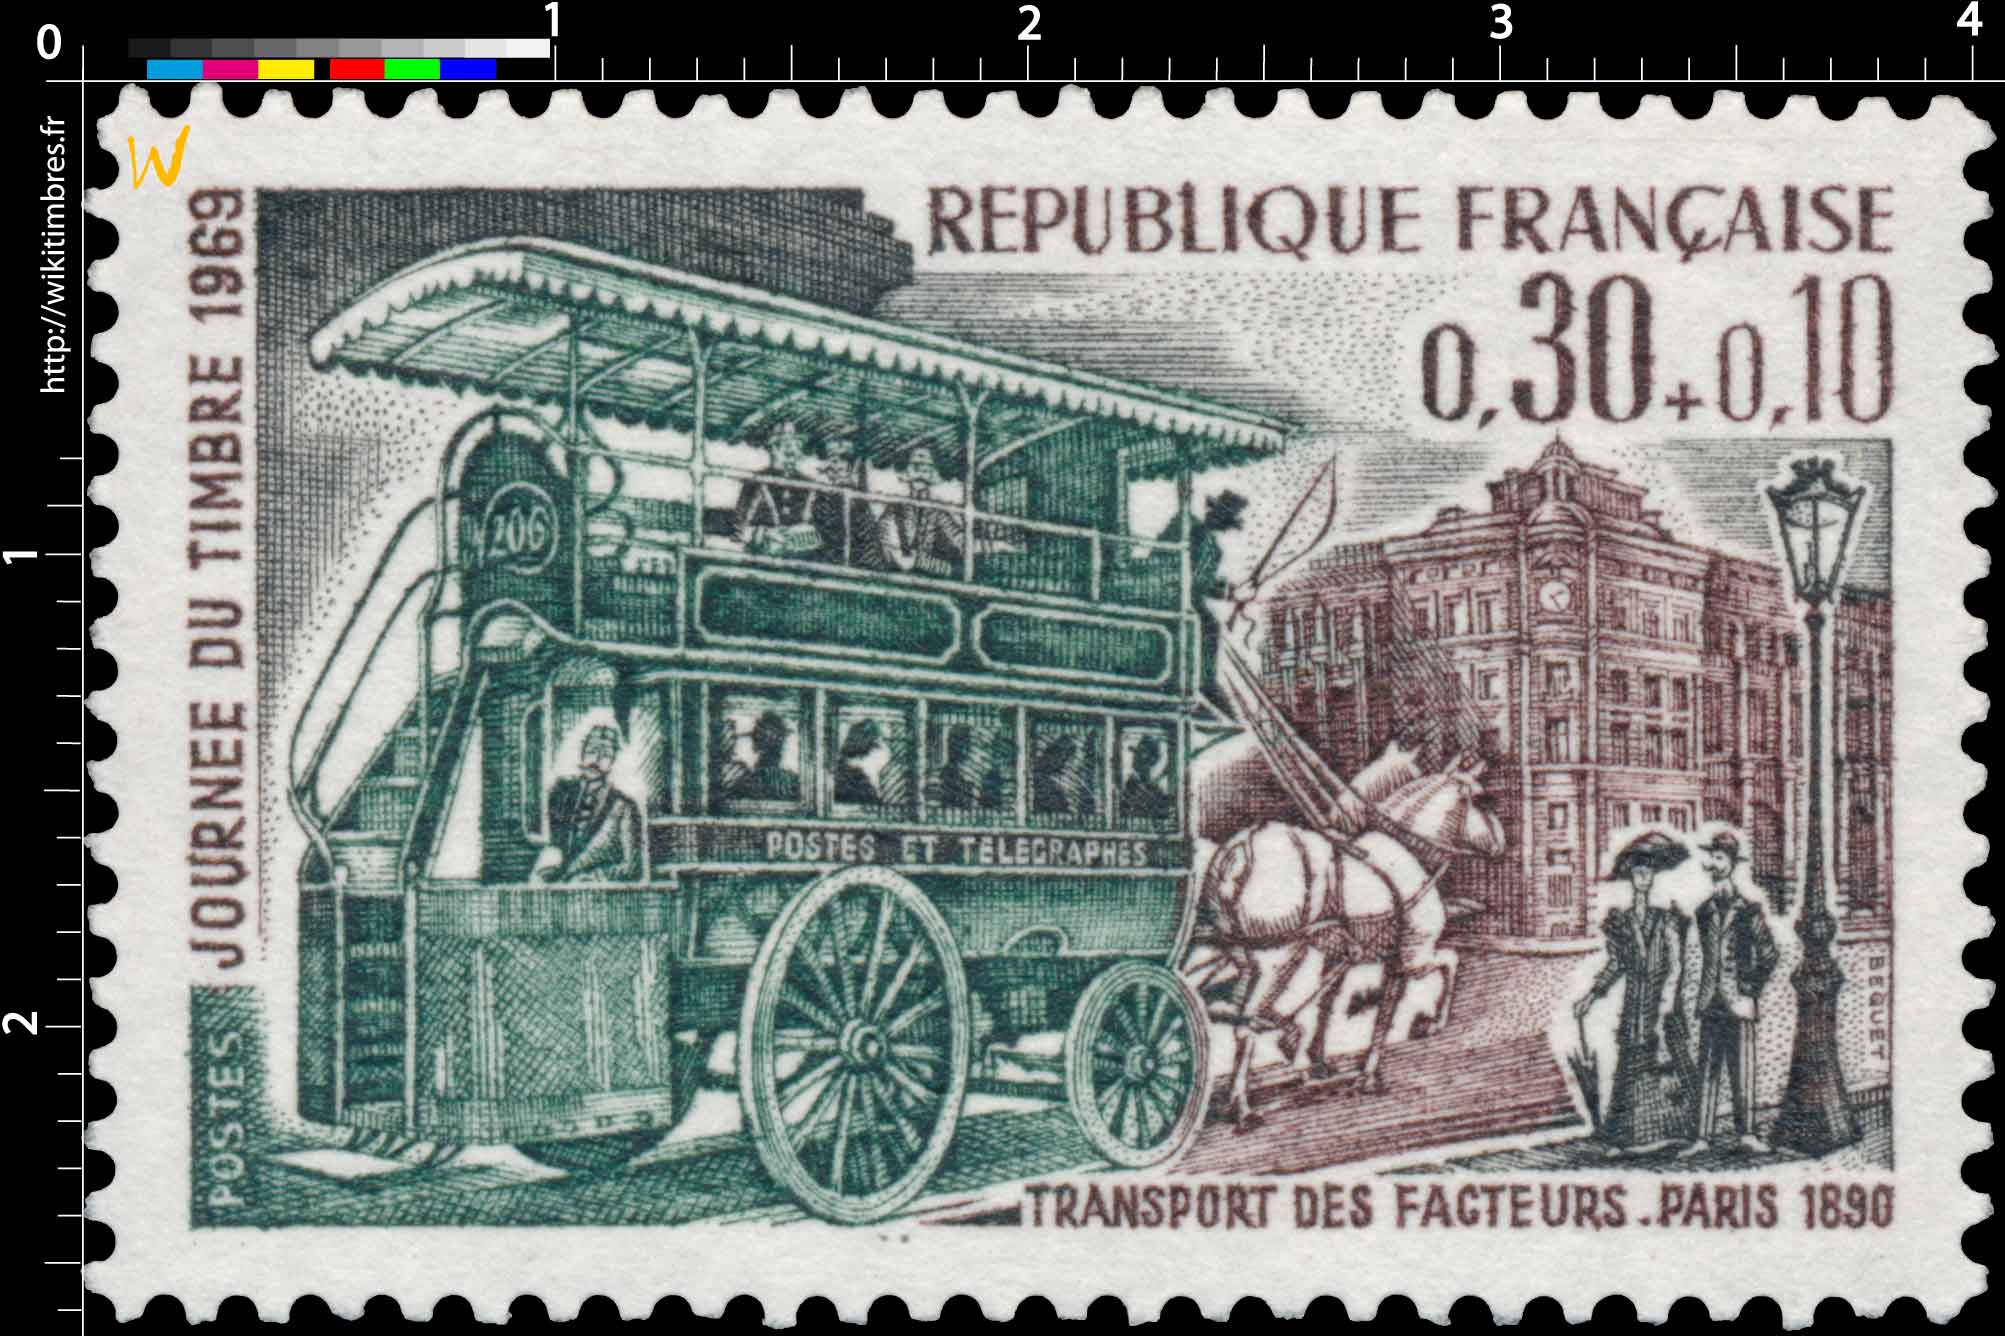 JOURNÉE DU TIMBRE 1969 TRANSPORT DES FACTEURS. PARIS 1830